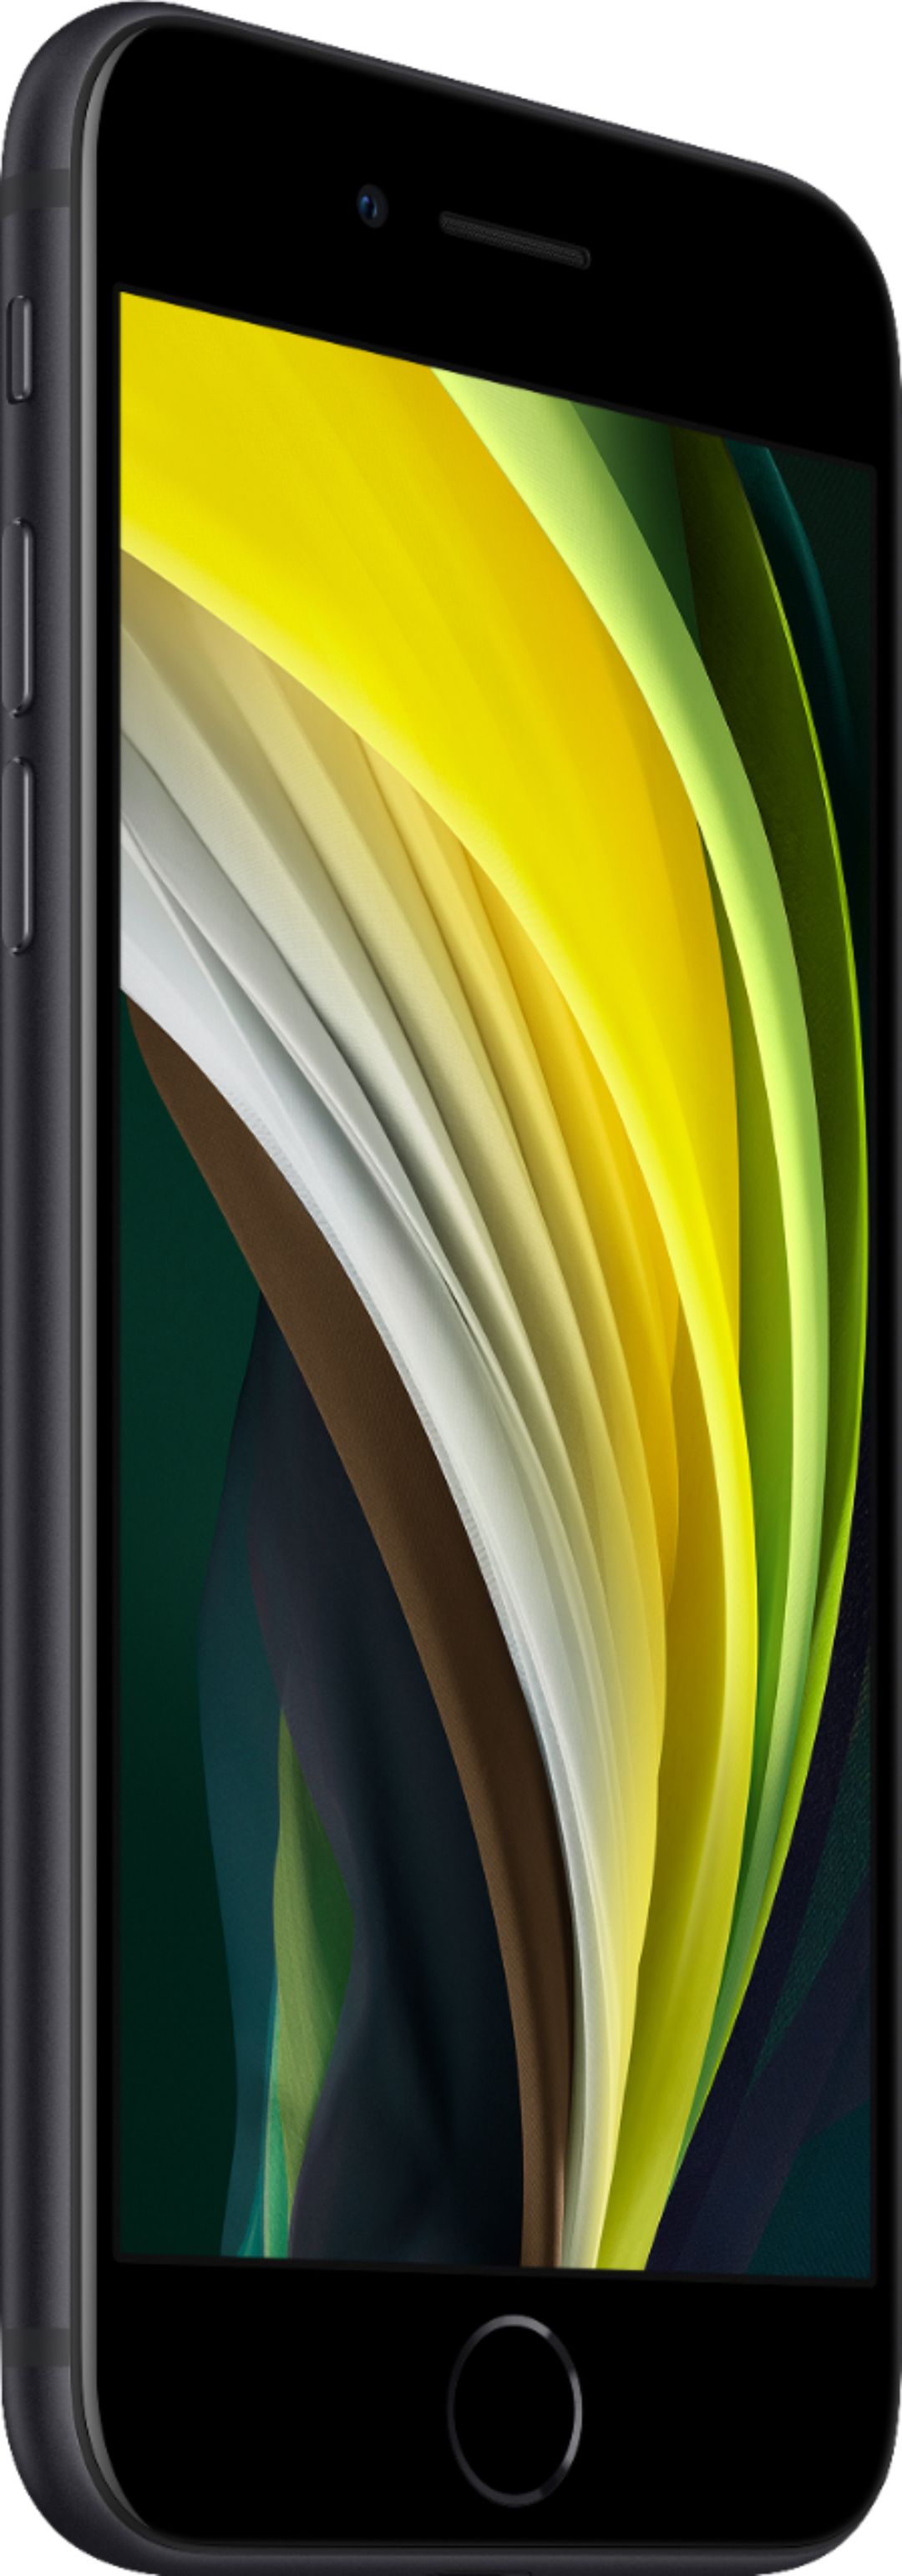 スマートフォン/携帯電話 スマートフォン本体 Best Buy: Apple iPhone SE (2nd generation) 64GB Black (T-Mobile 